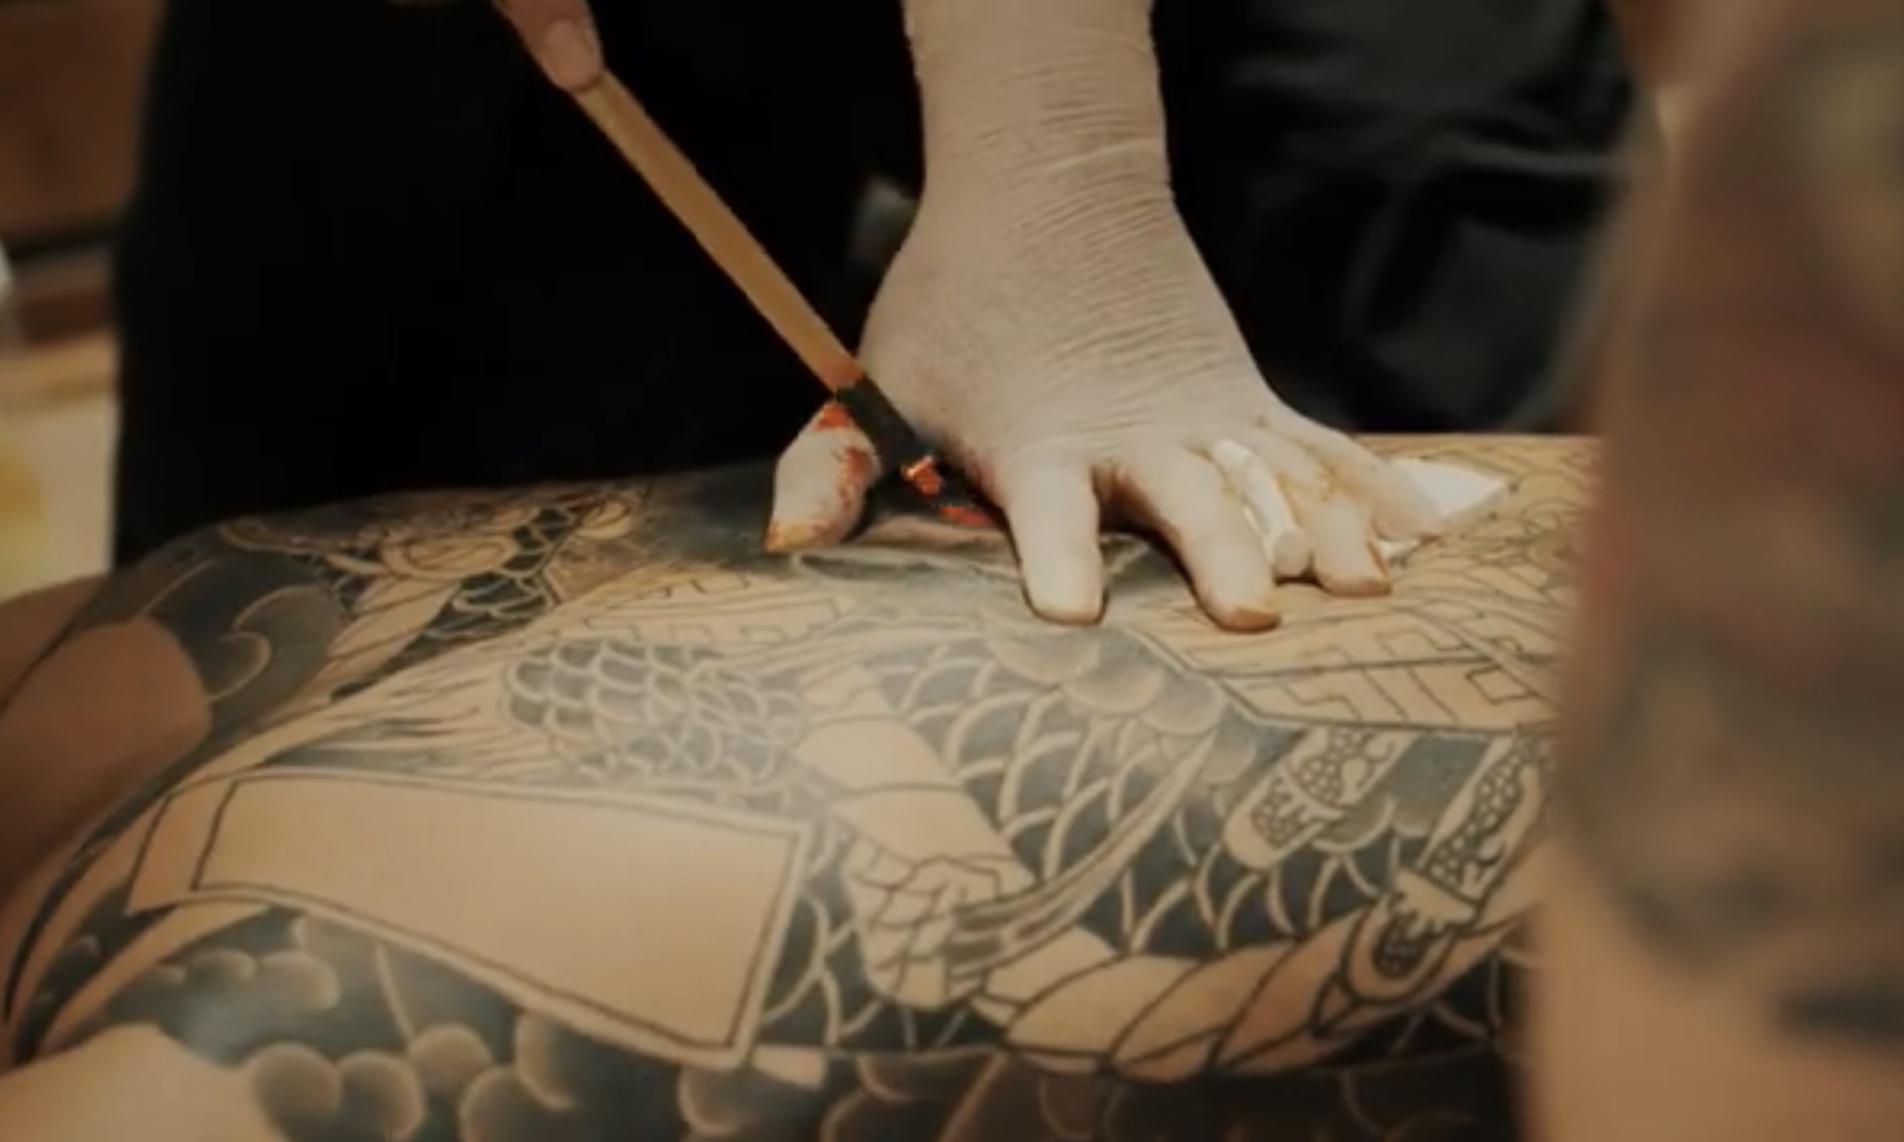 Japanese Tattoo Legend Kisaragi Behind the scenes